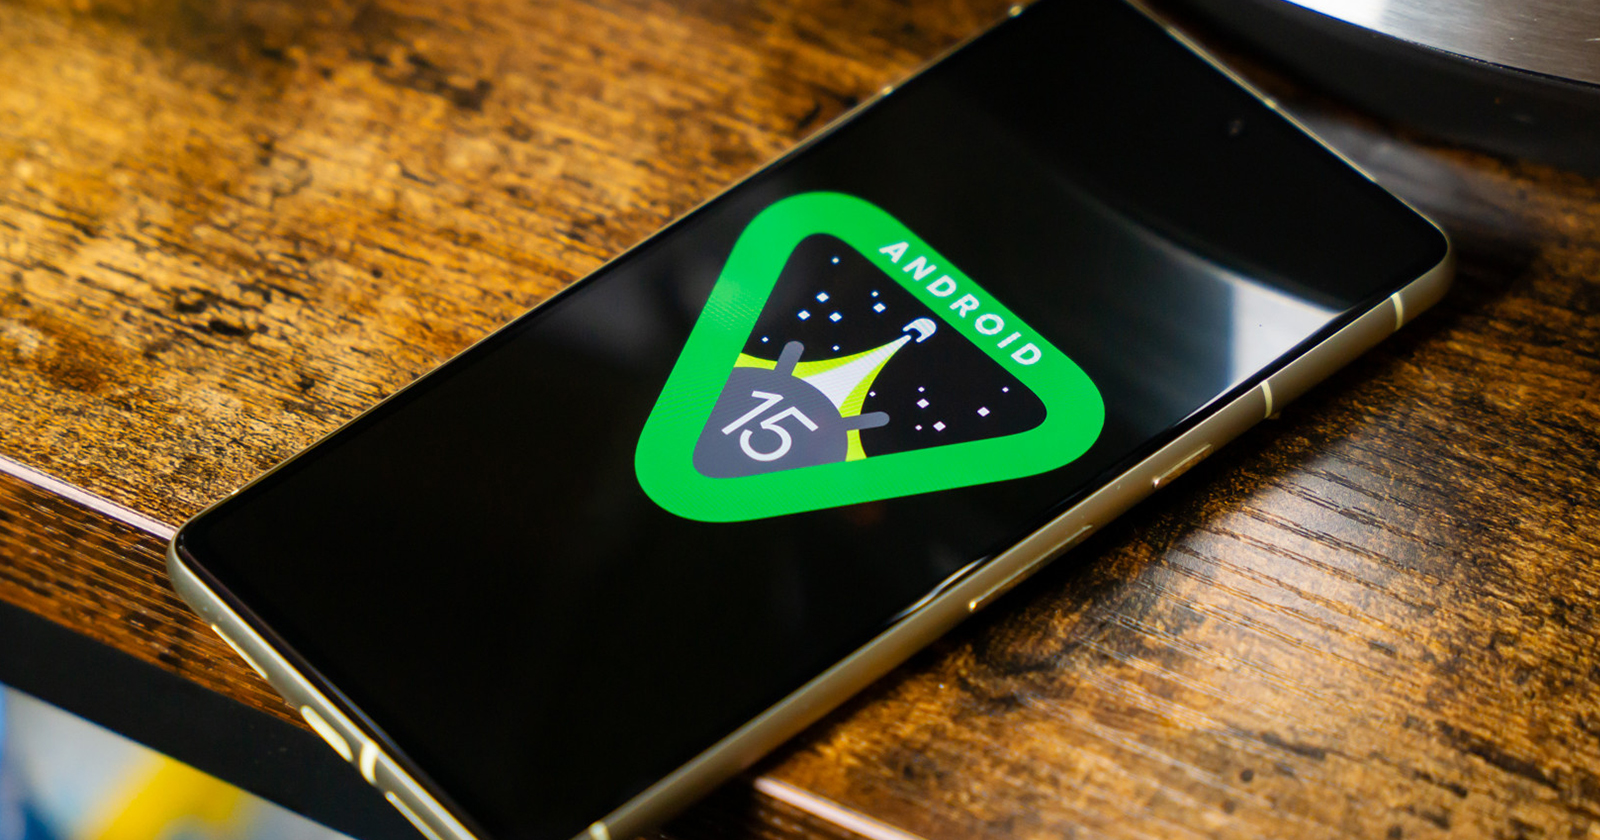 Android 15 aumenterà la durata della batteria in standby a 3 ore